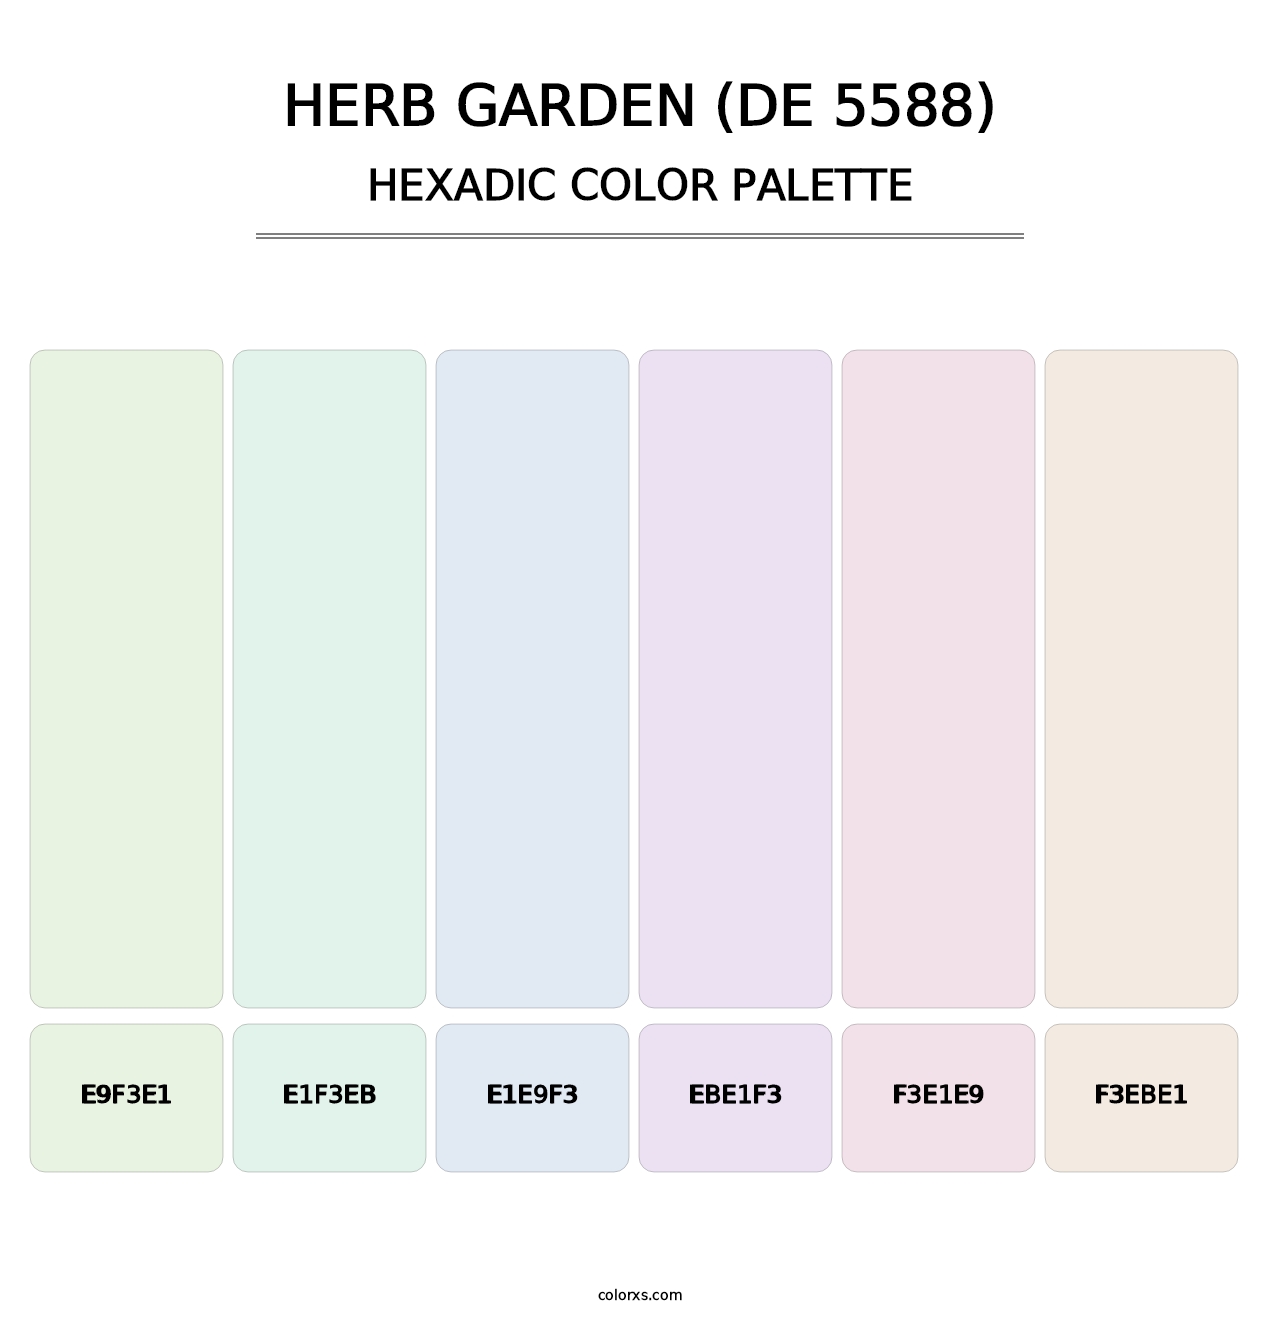 Herb Garden (DE 5588) - Hexadic Color Palette